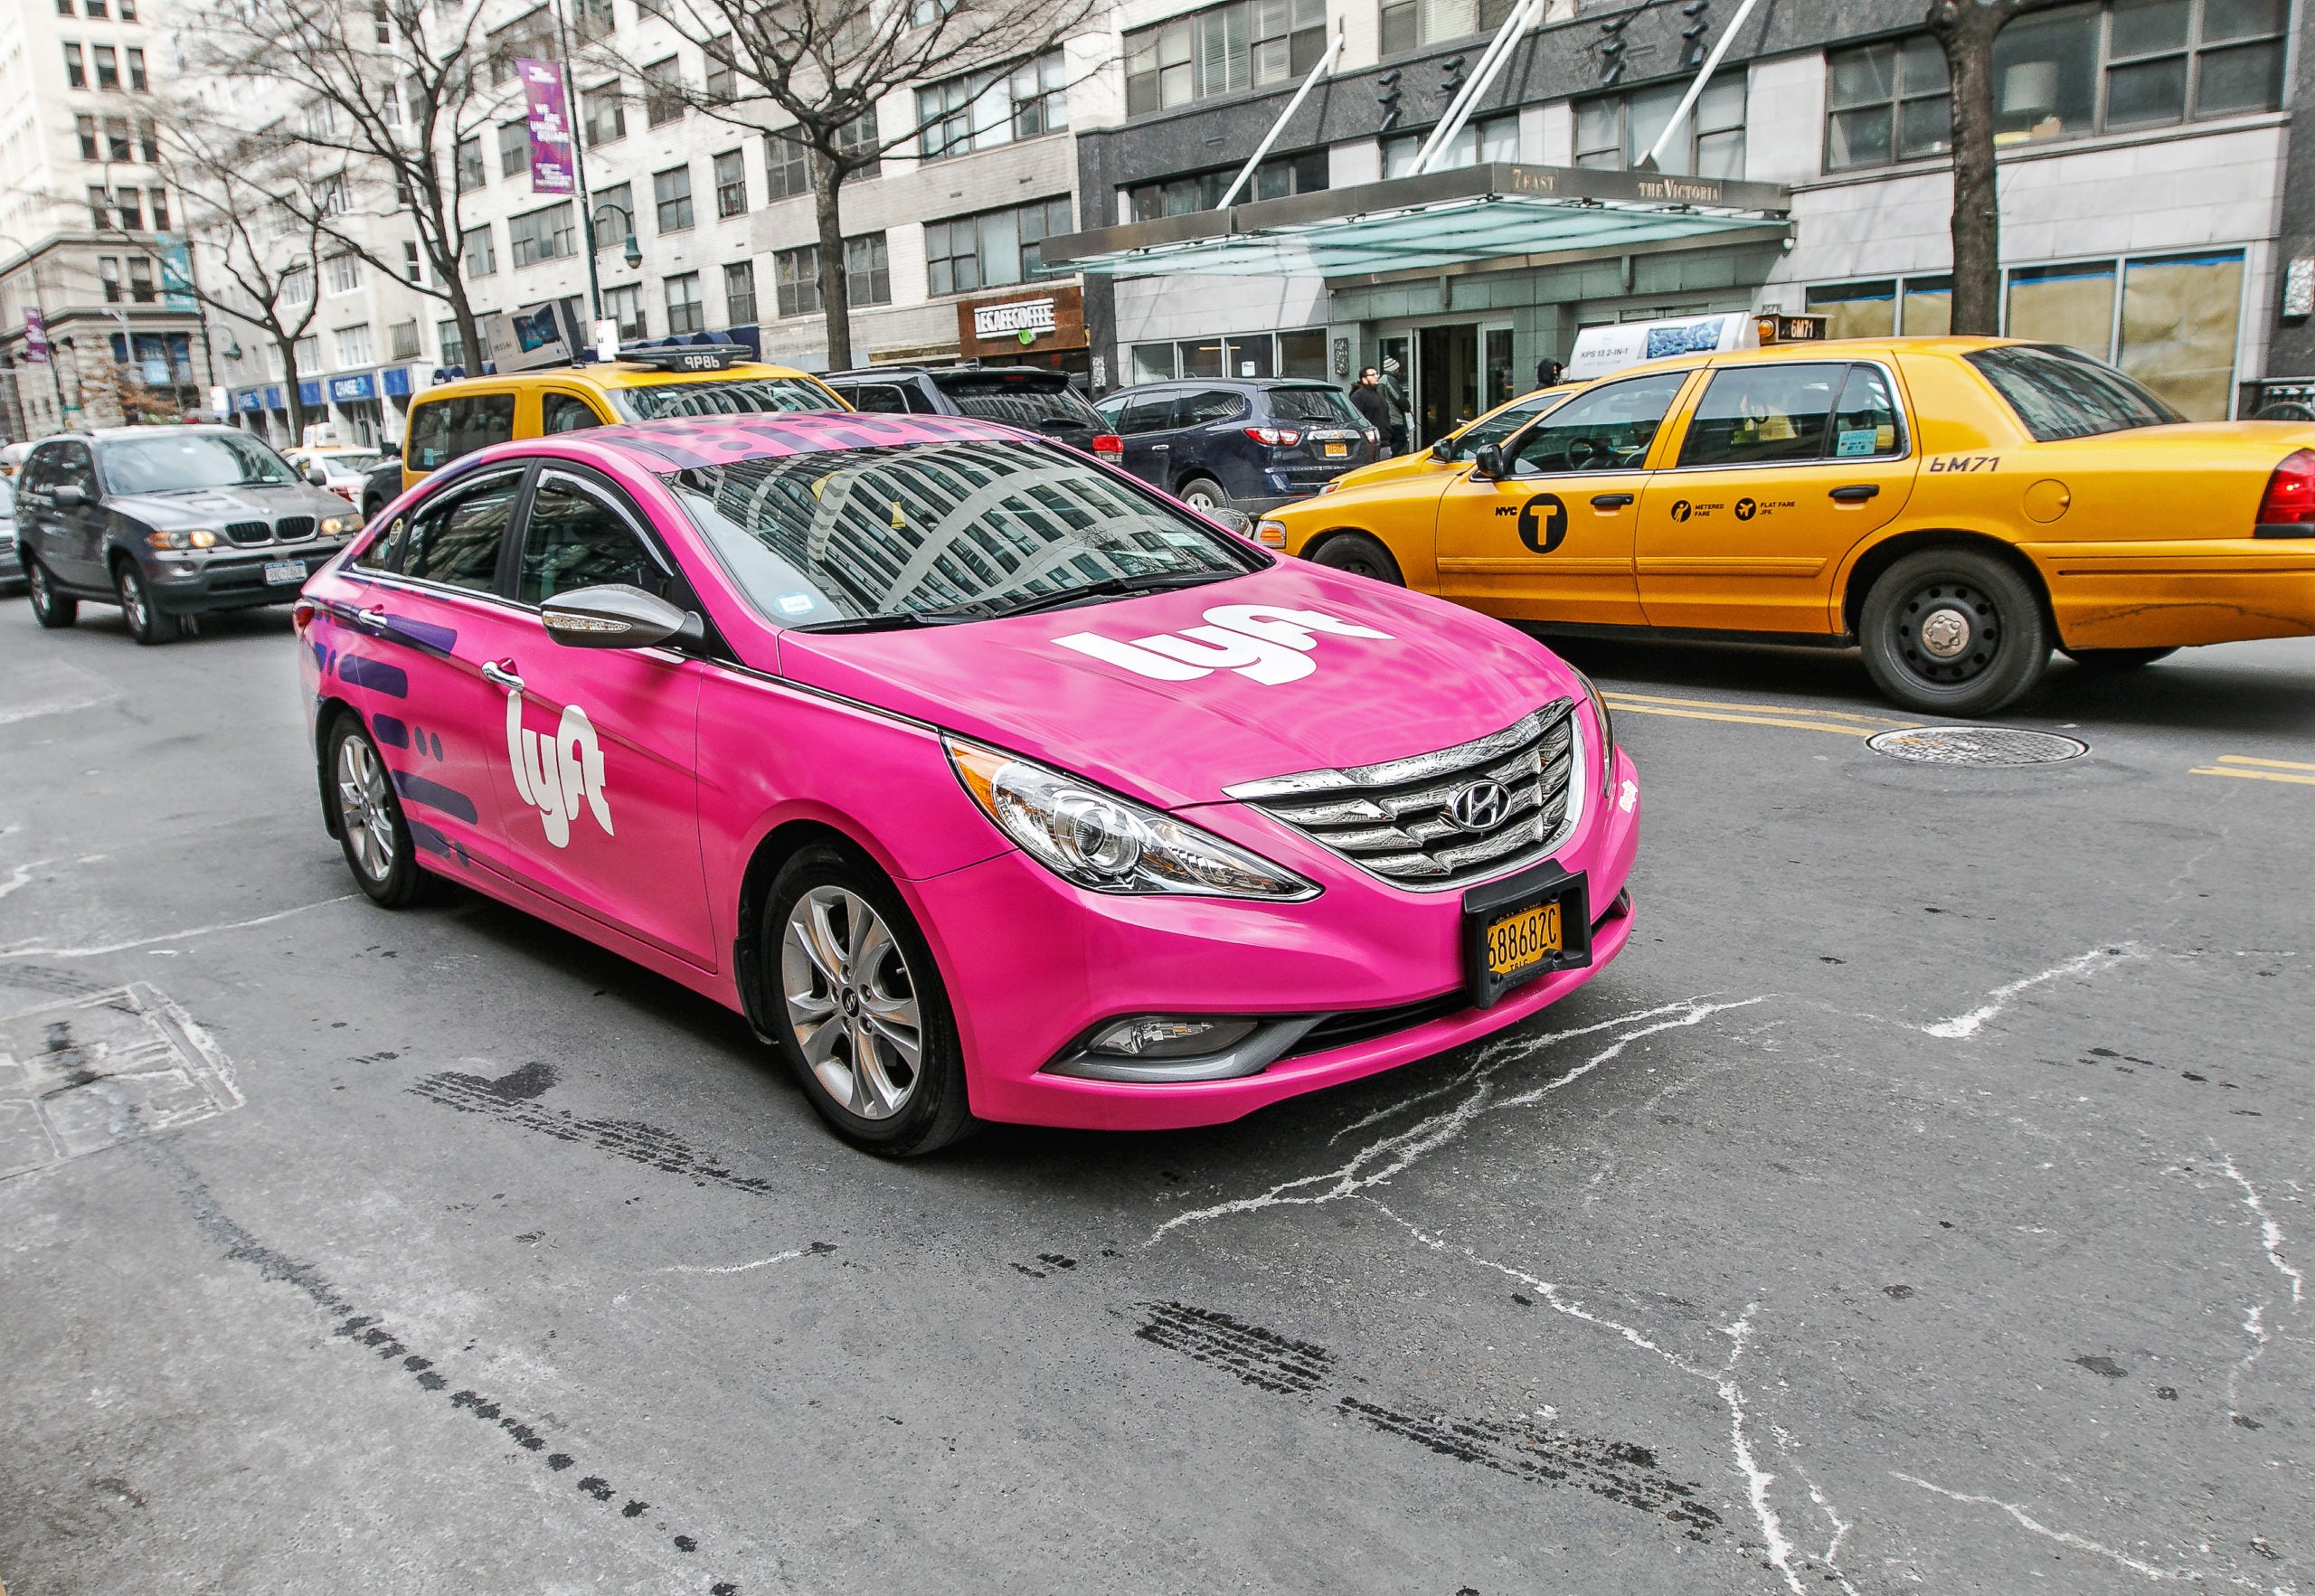 Pink Car With Lyft Branding in Manhattan